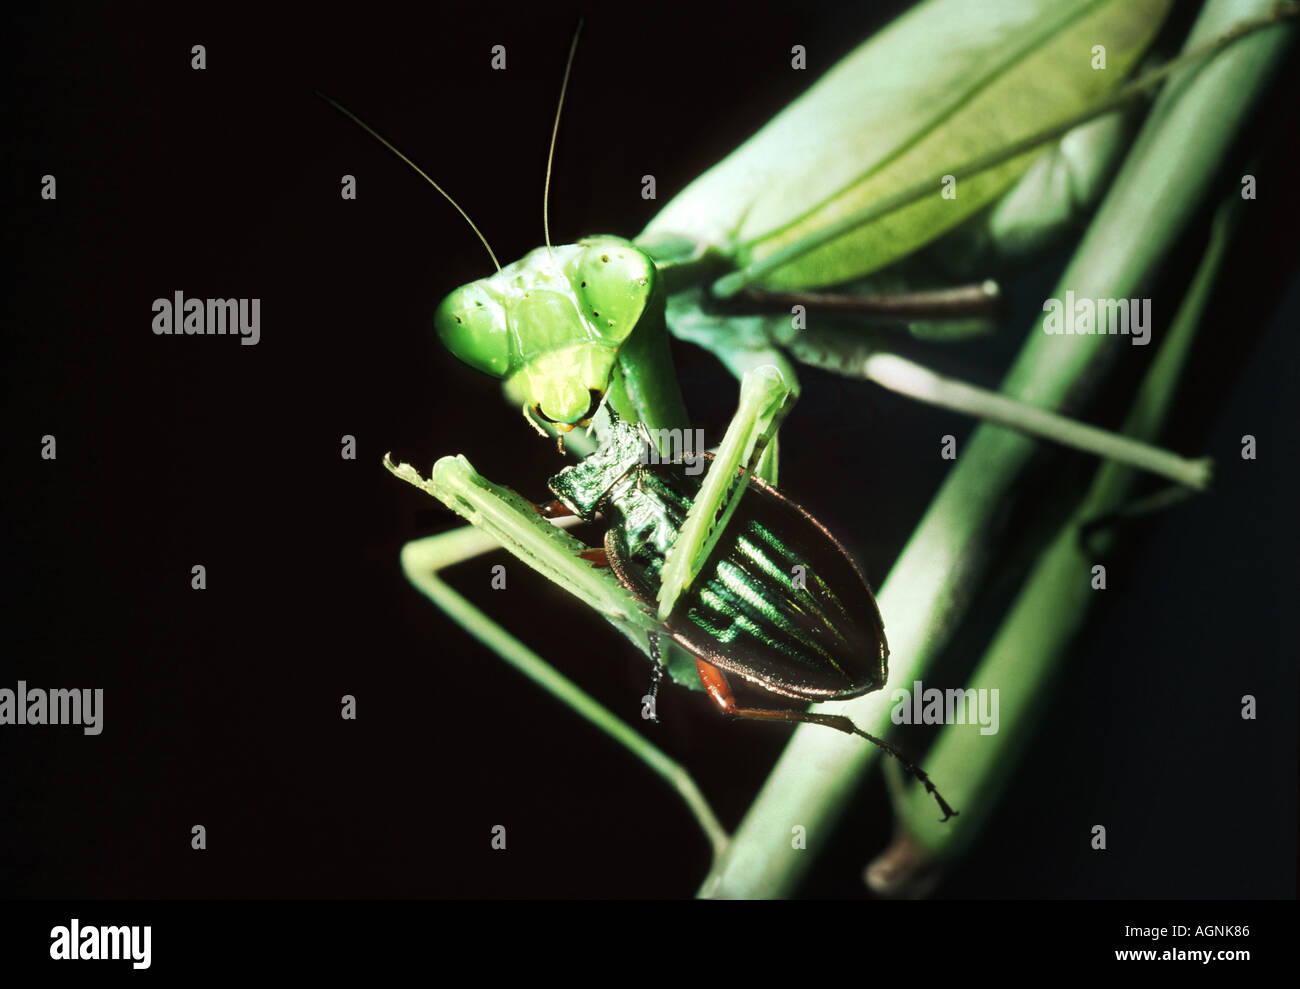 Grüne Gottesanbeterin Mantis Religiosa isst Essen ein Insekt Bit beißen den Kopf aus Griff in seinen vorderen Klauen greifen Stockfoto